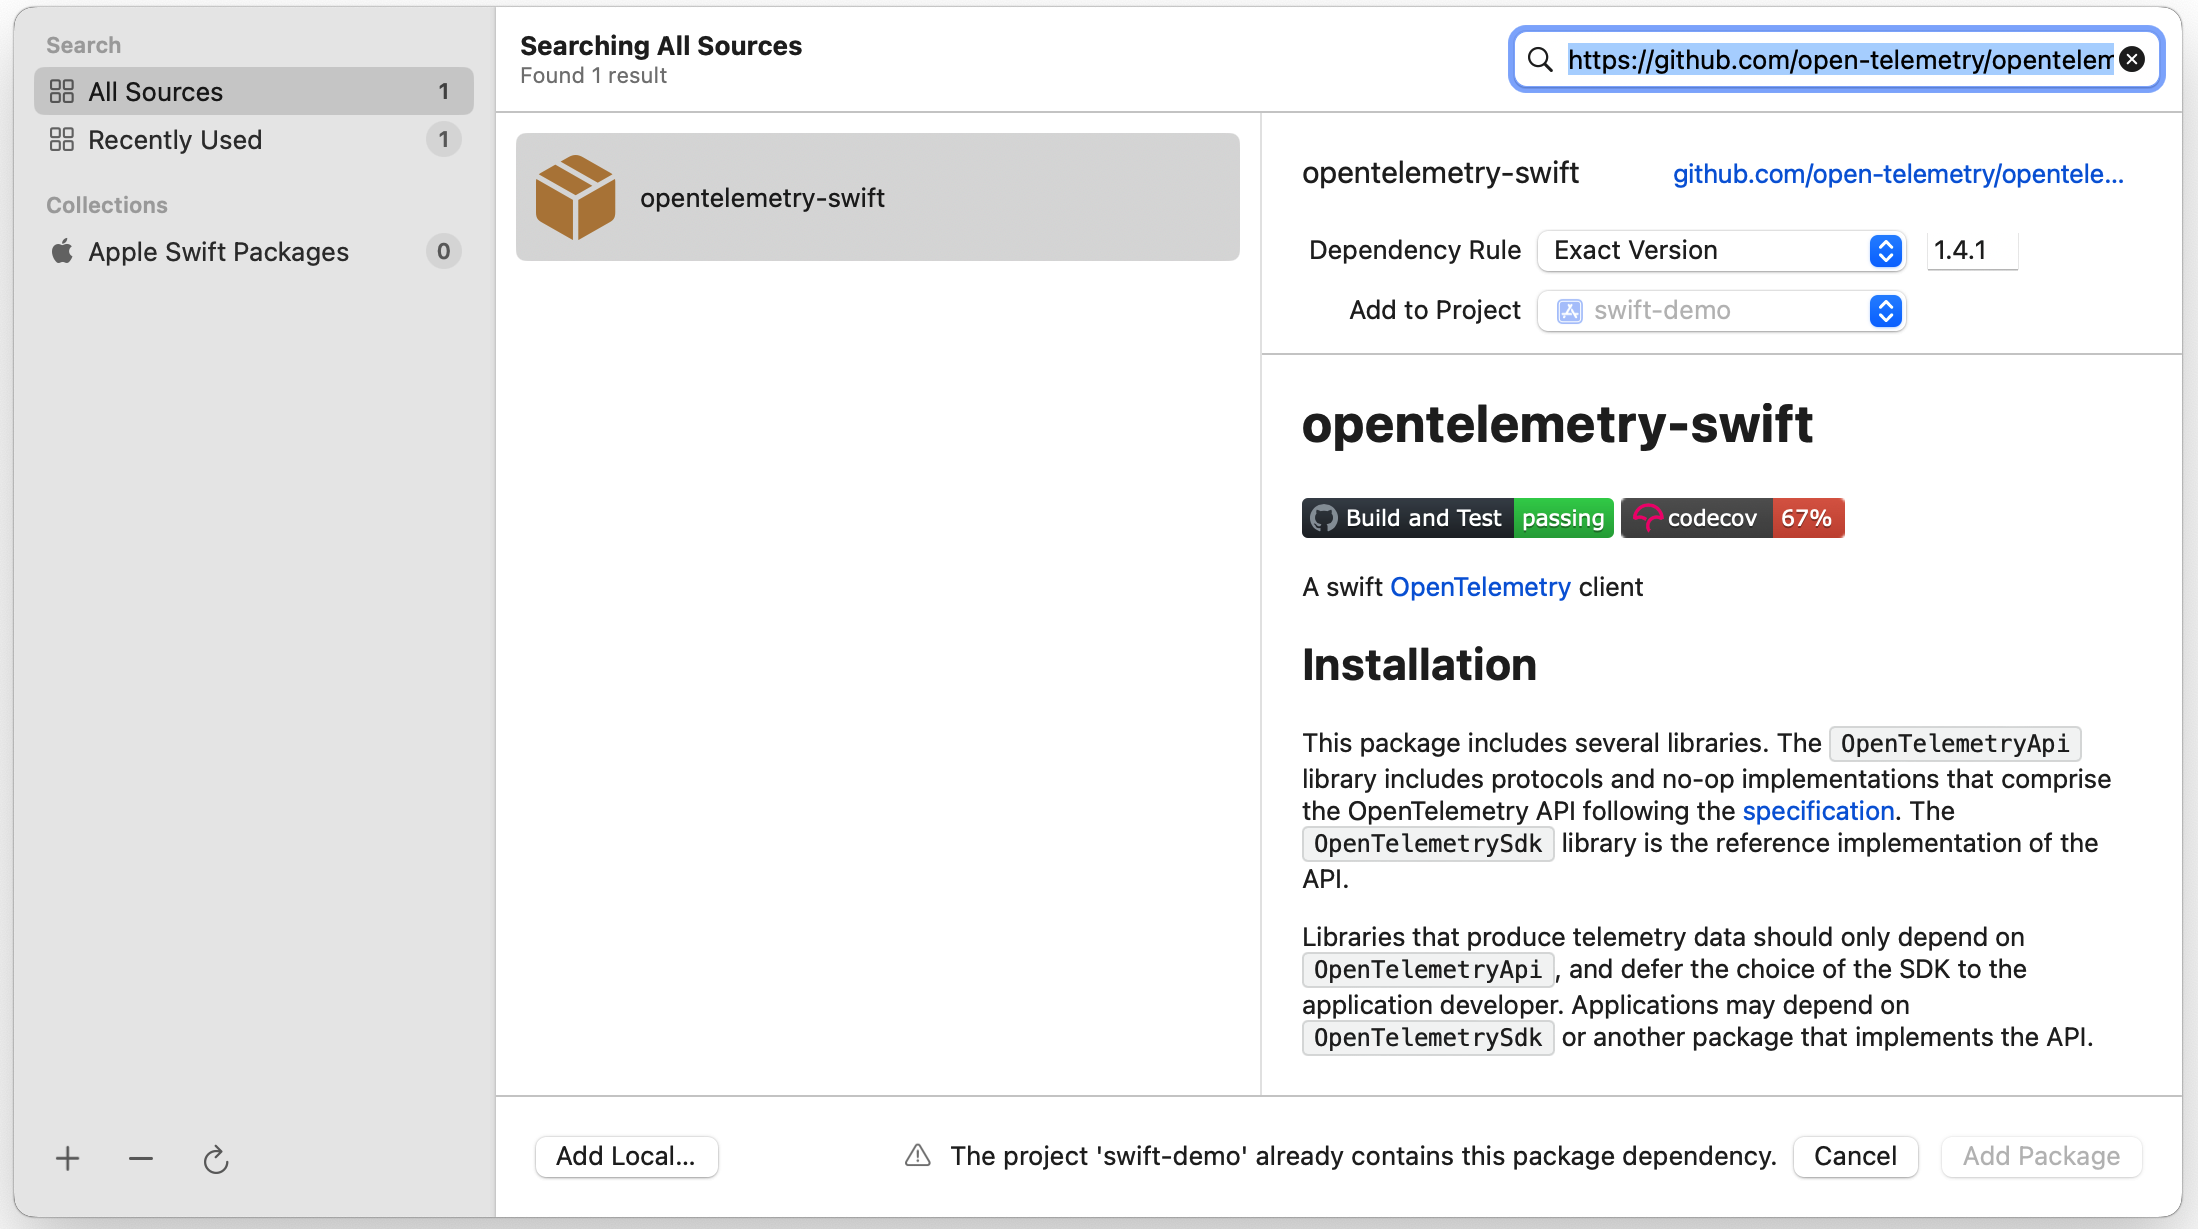 opentelemetry-swift